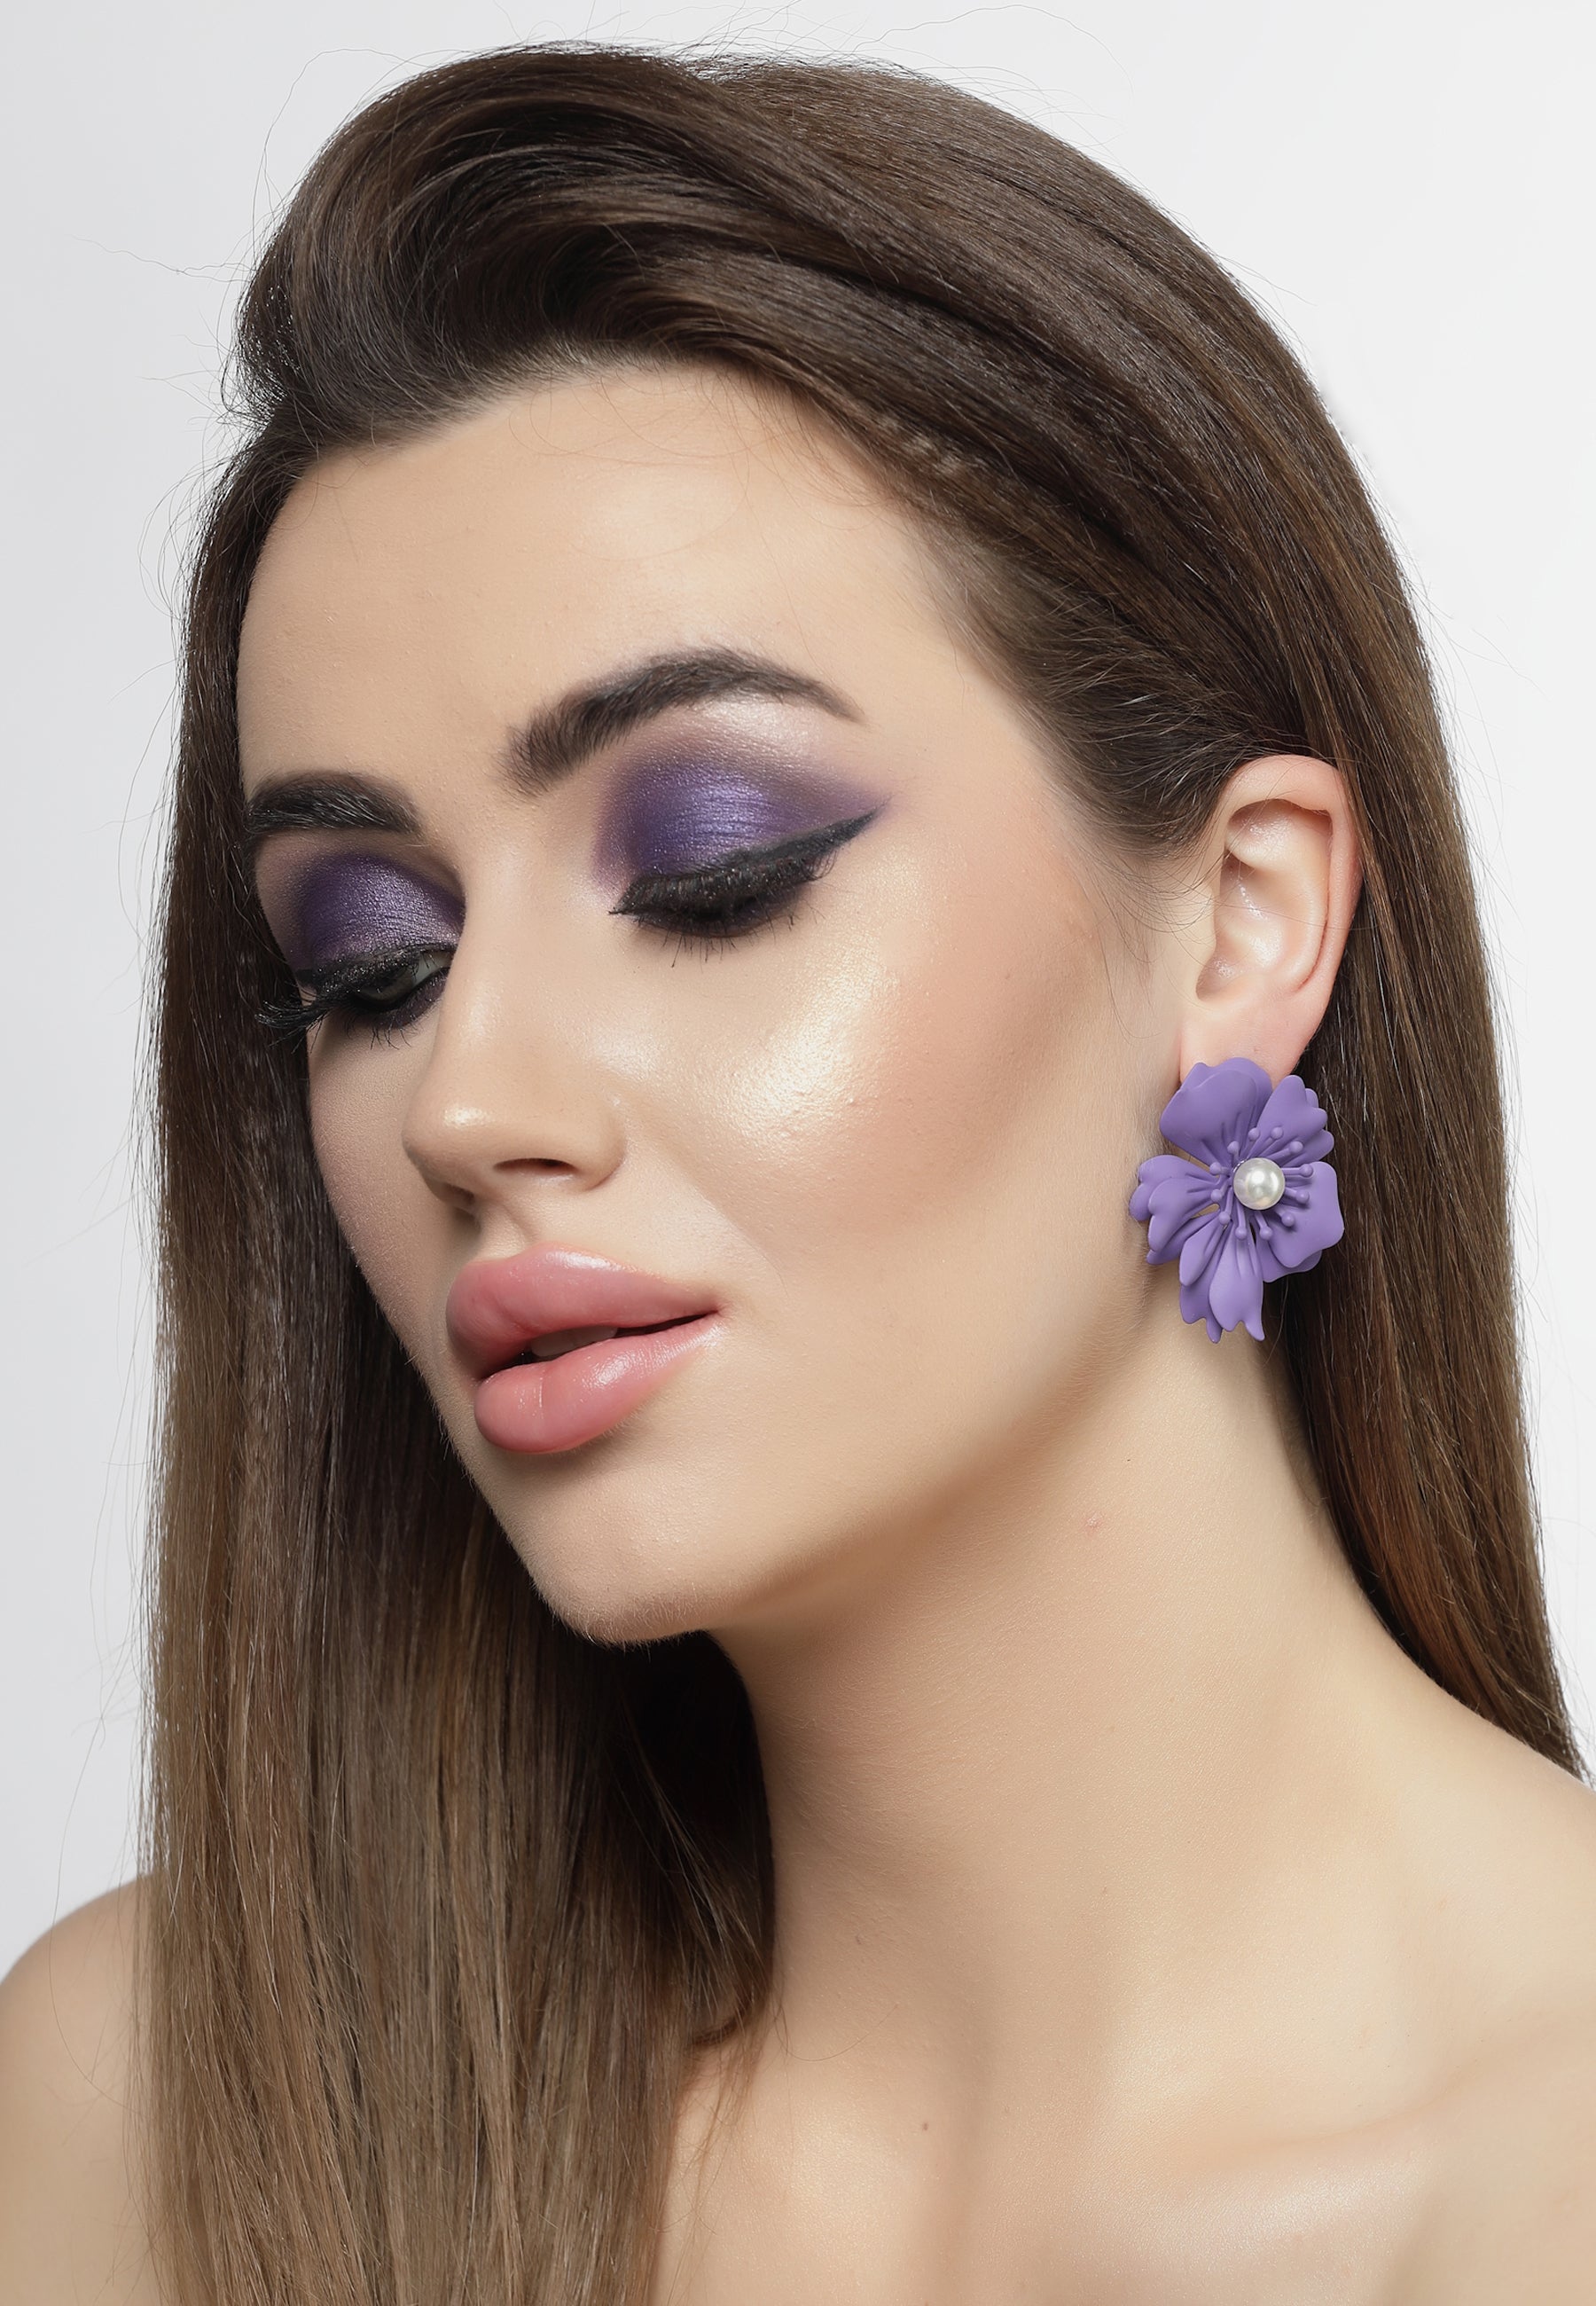 Pendientes de perlas florales en violeta